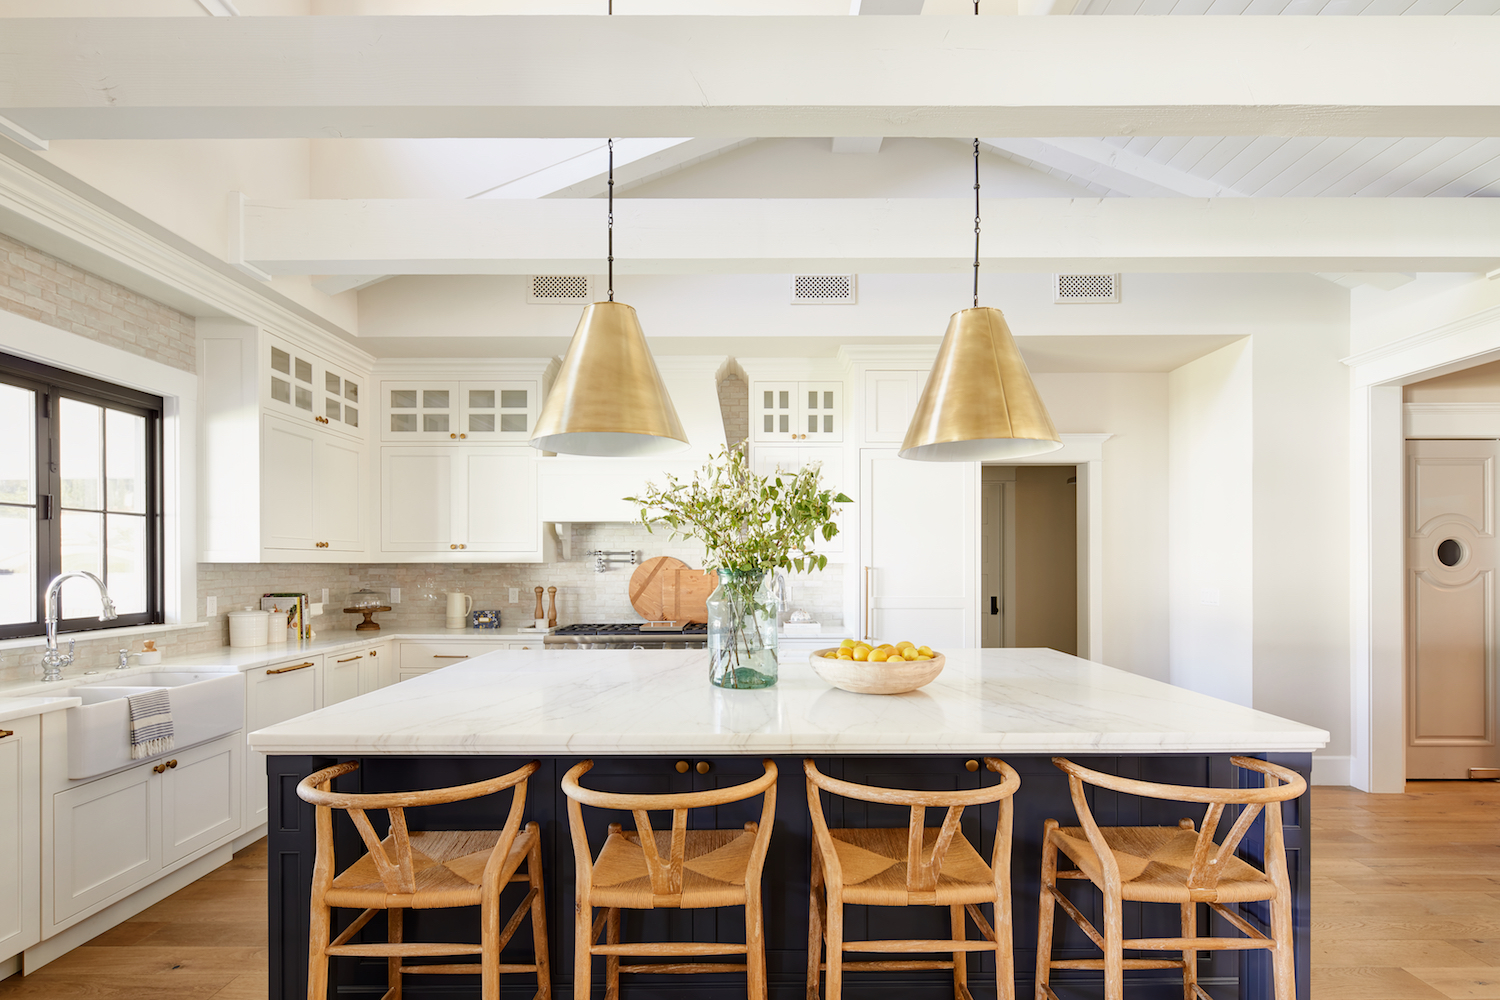 White and Navy Kitchen Design by Phoenix Interior Designer Lexi Westergard Design